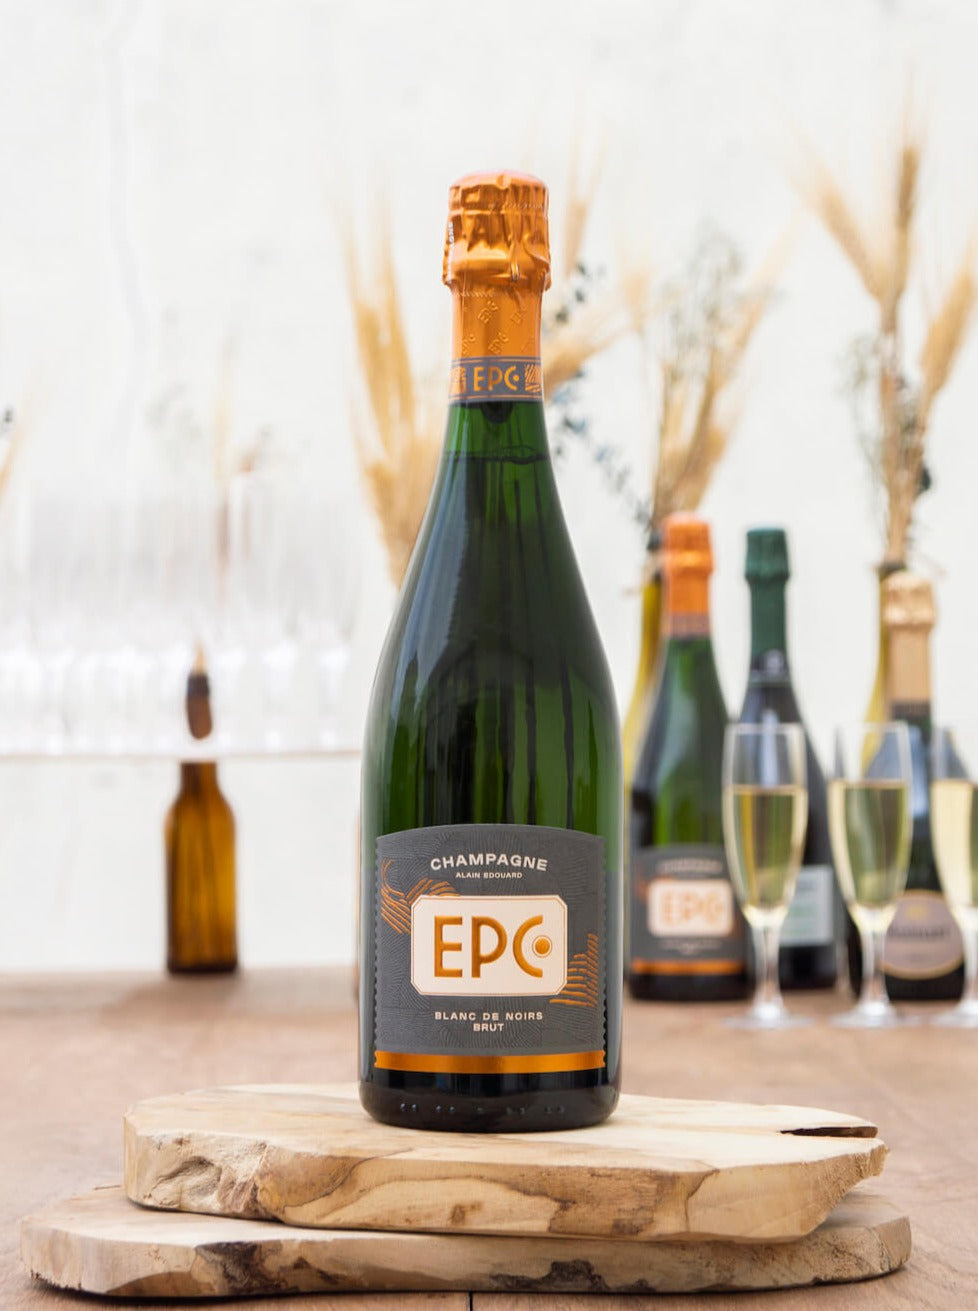 Champagne - EPC Blanc de noir, Alain Édouard